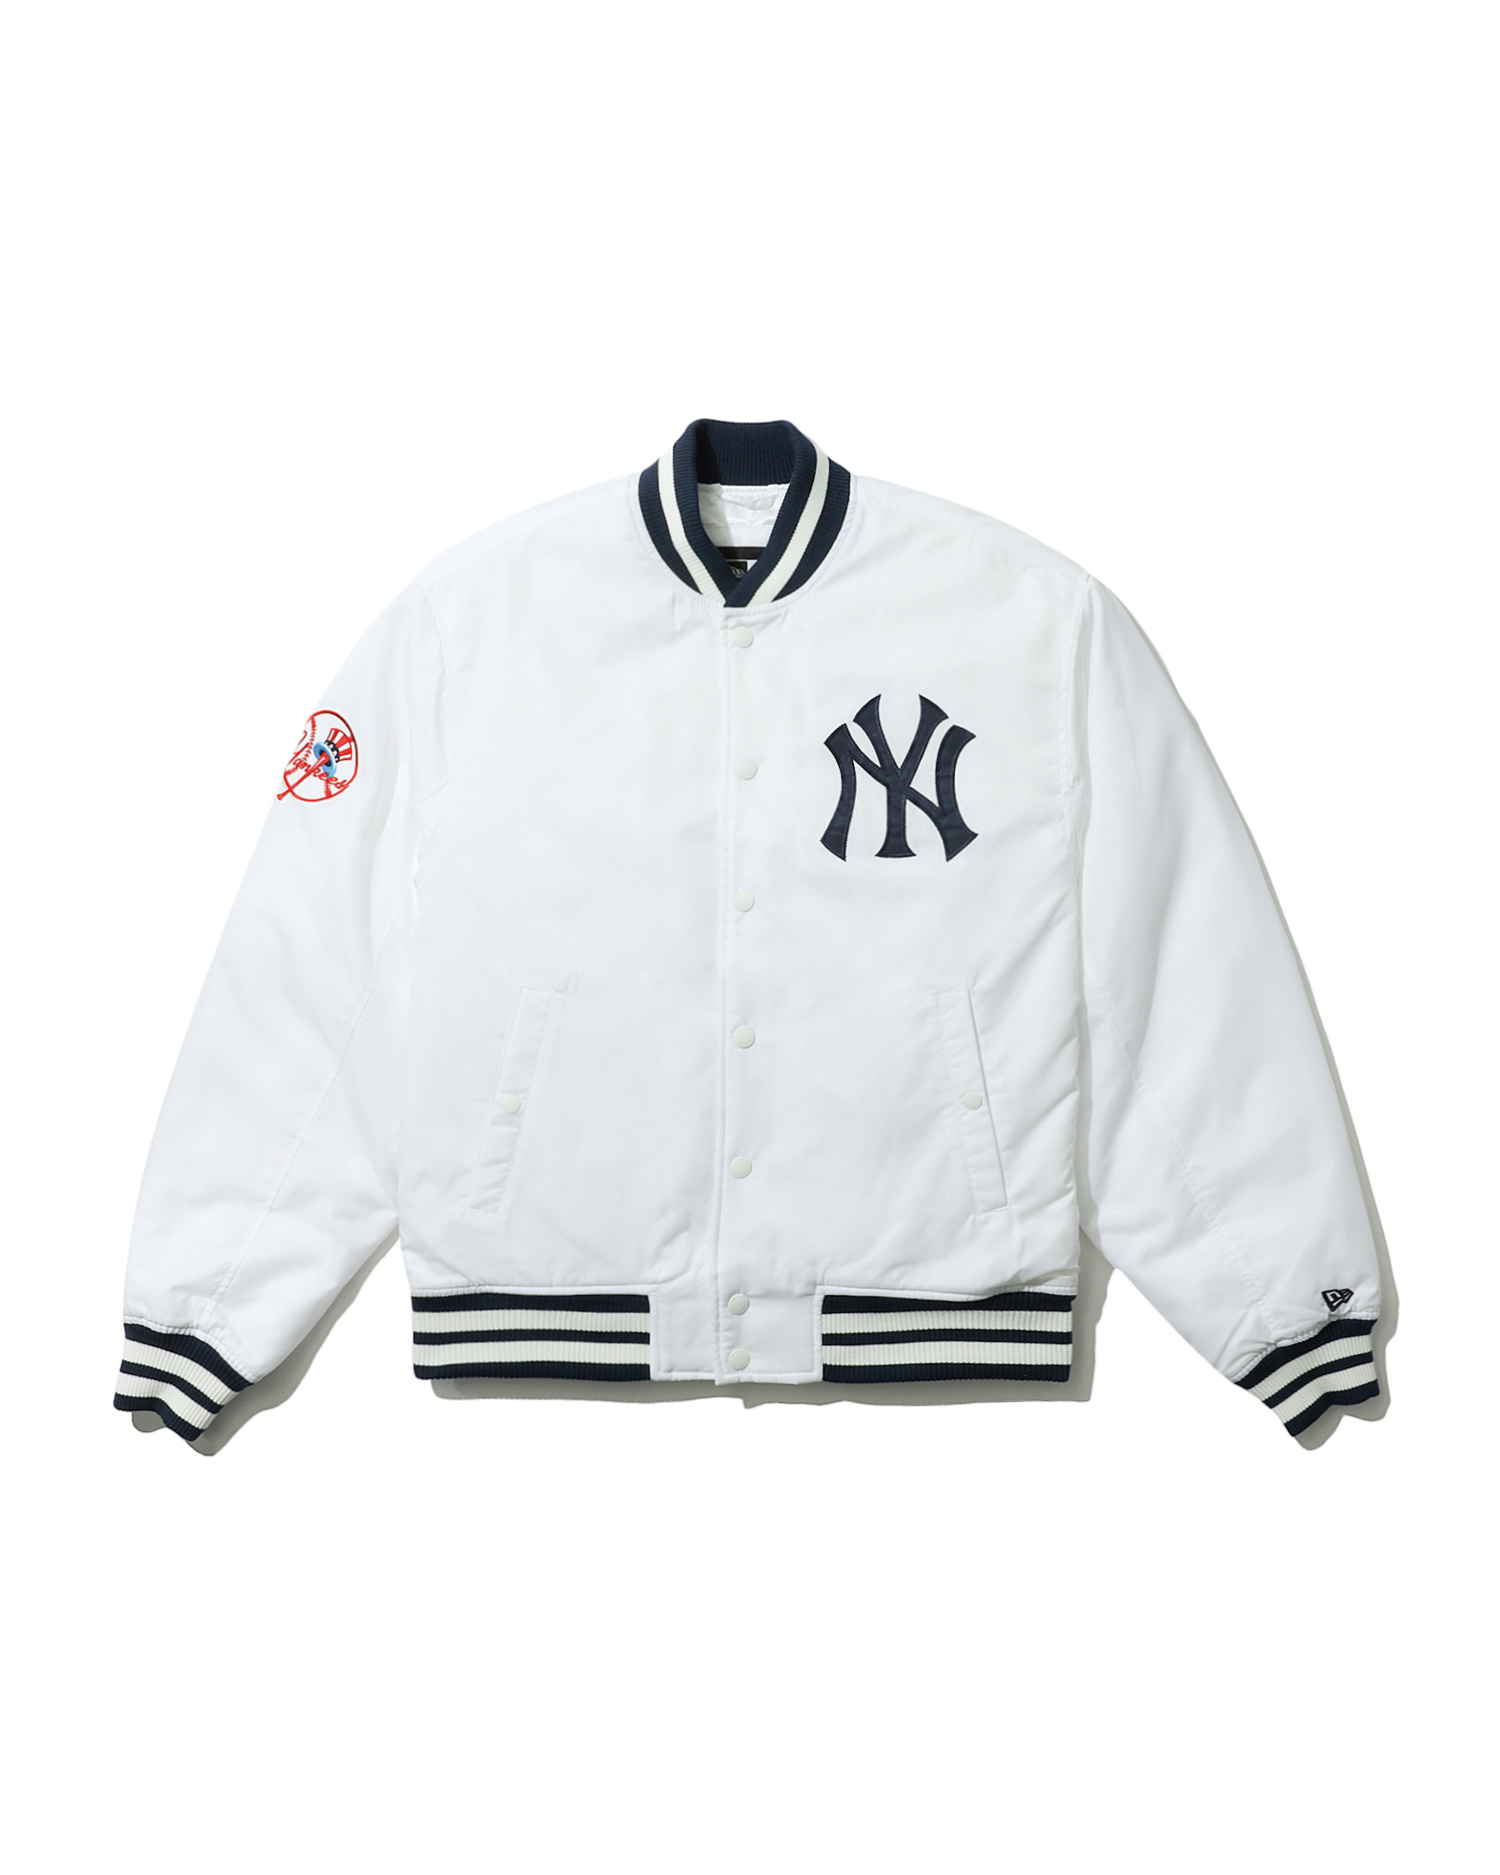 New York Yankees Black Heritage Varsity Jacket  At Excellent Price